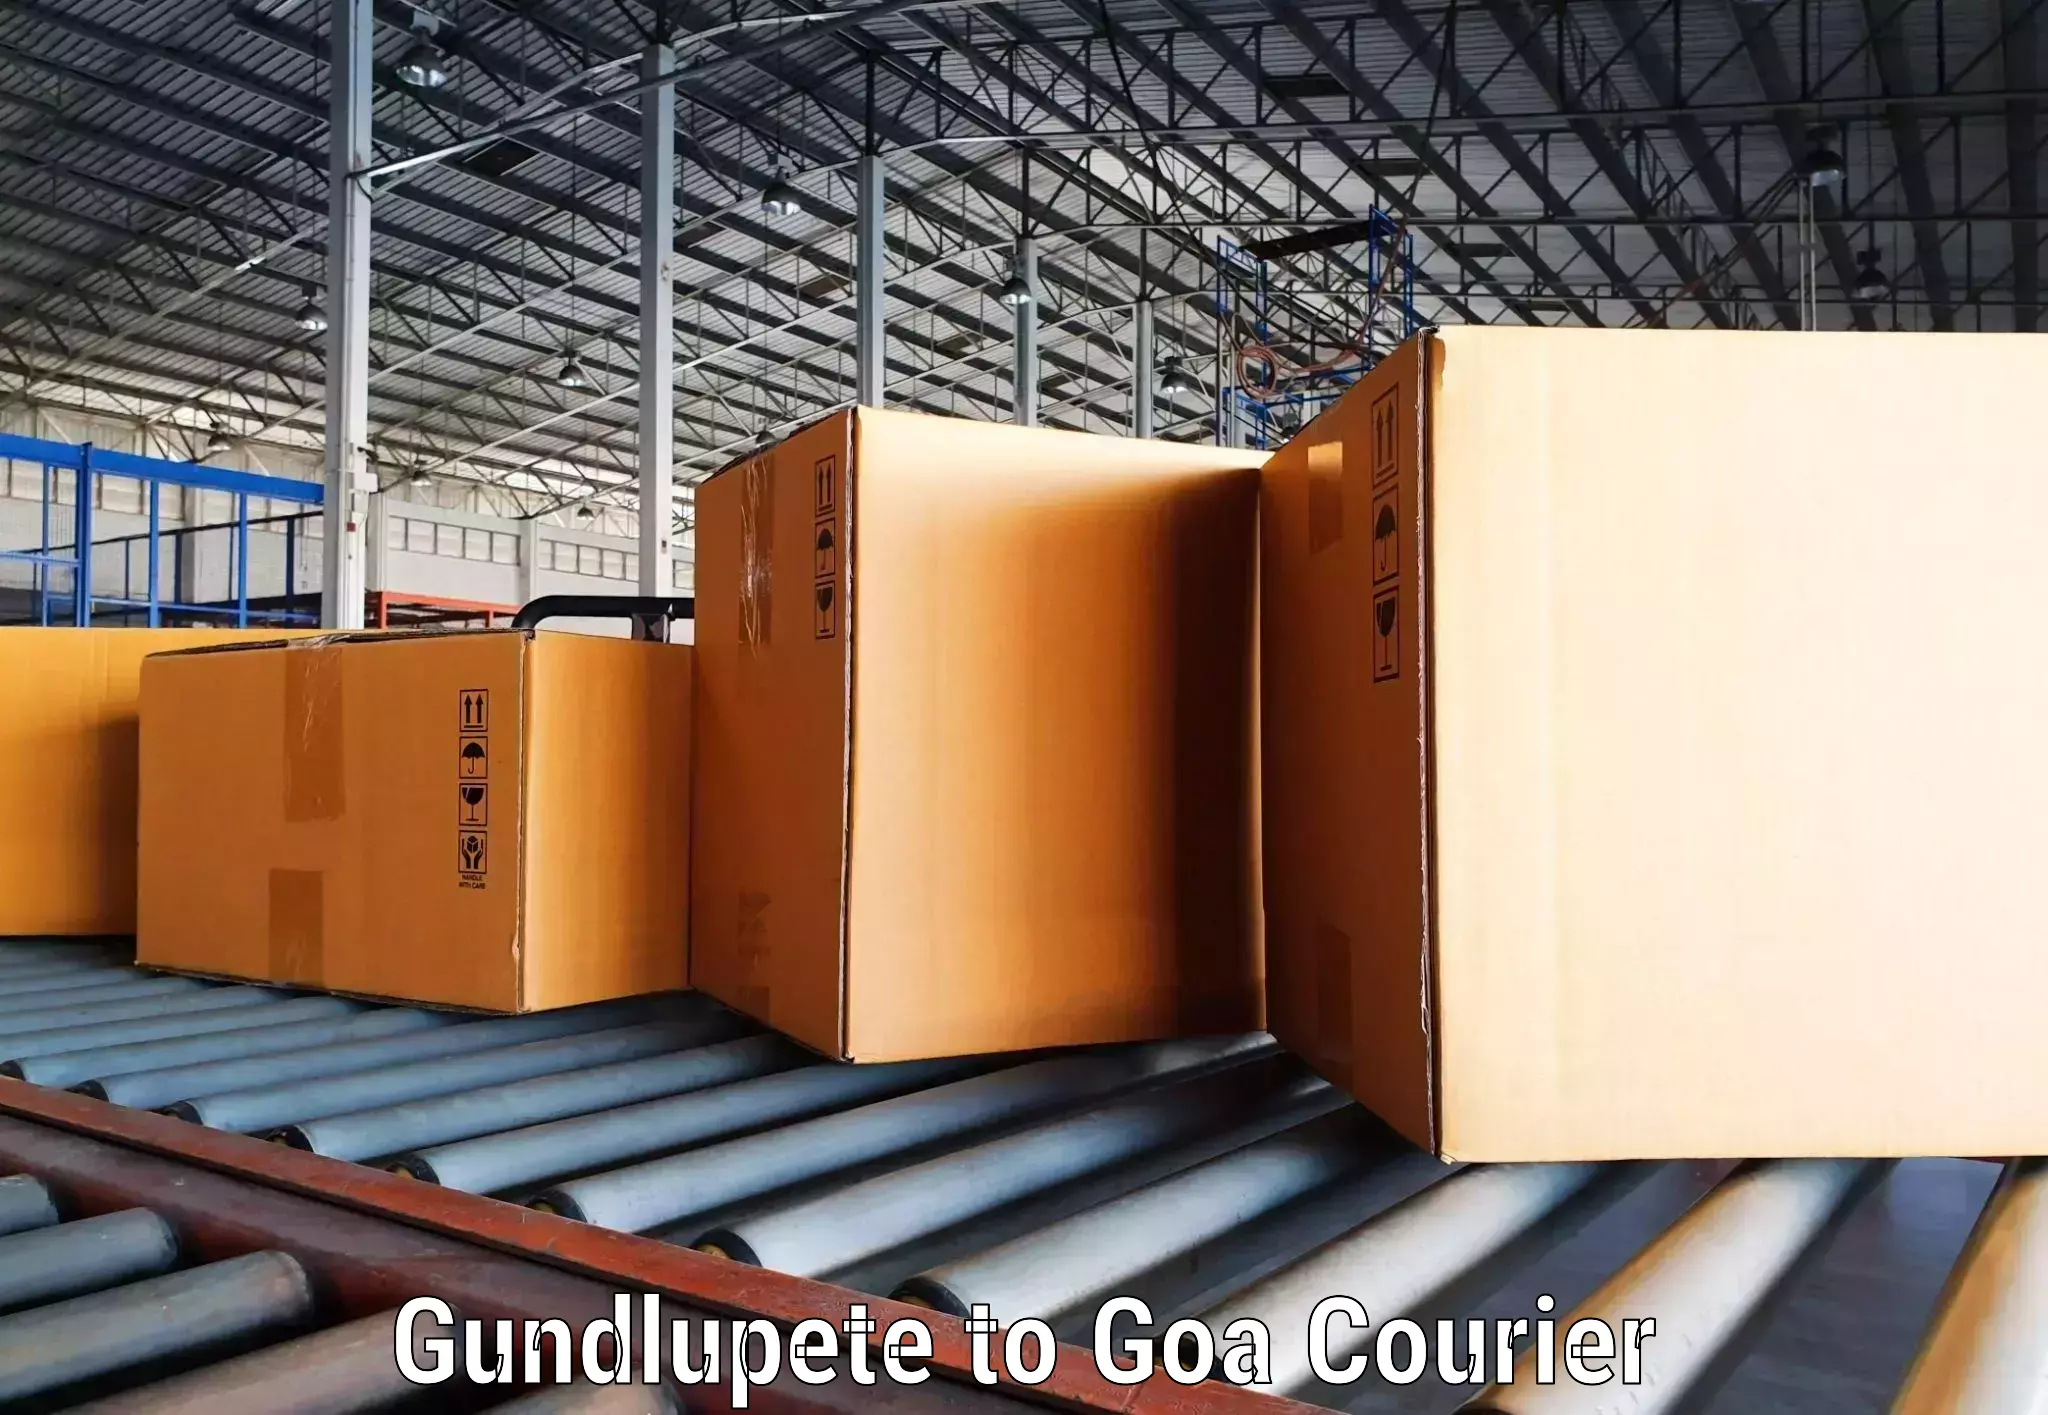 Global logistics network Gundlupete to South Goa